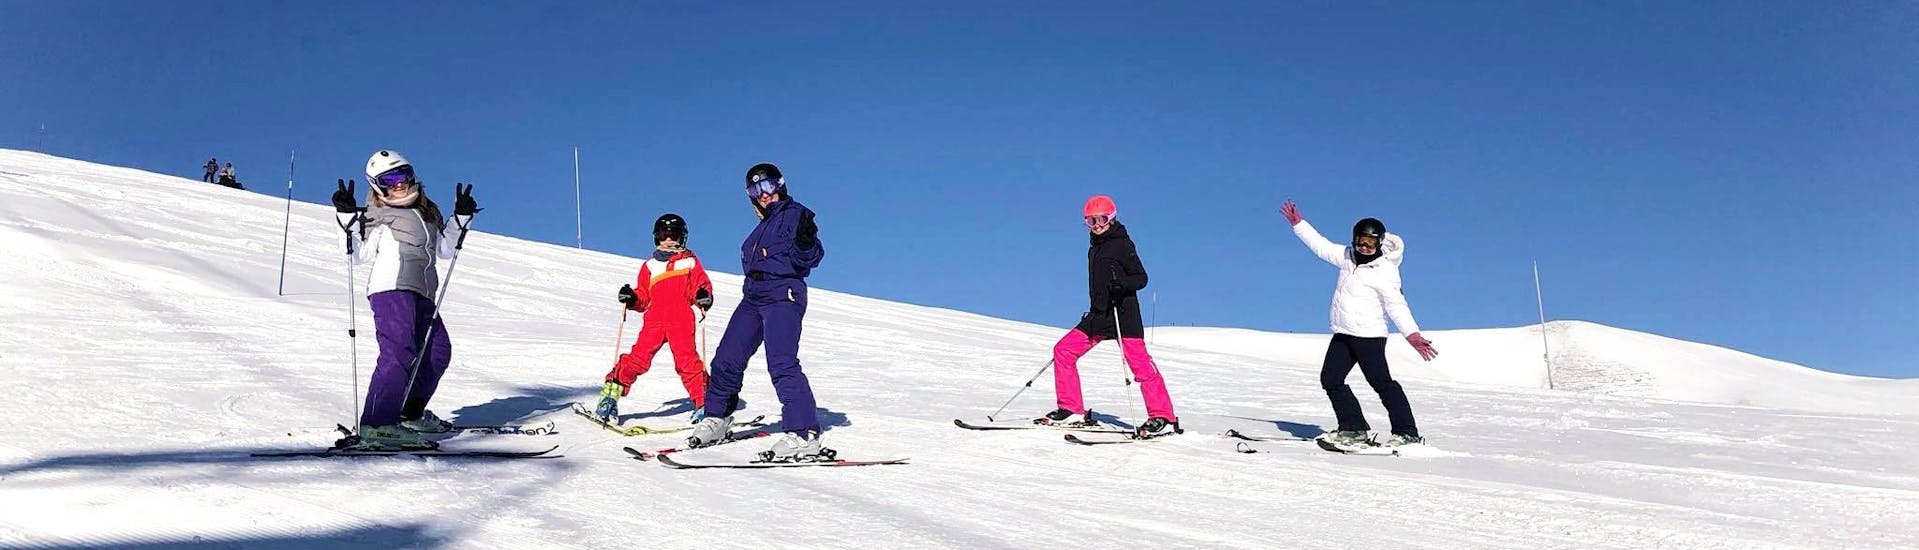 Skikurs für Erwachsene für alle Levels.